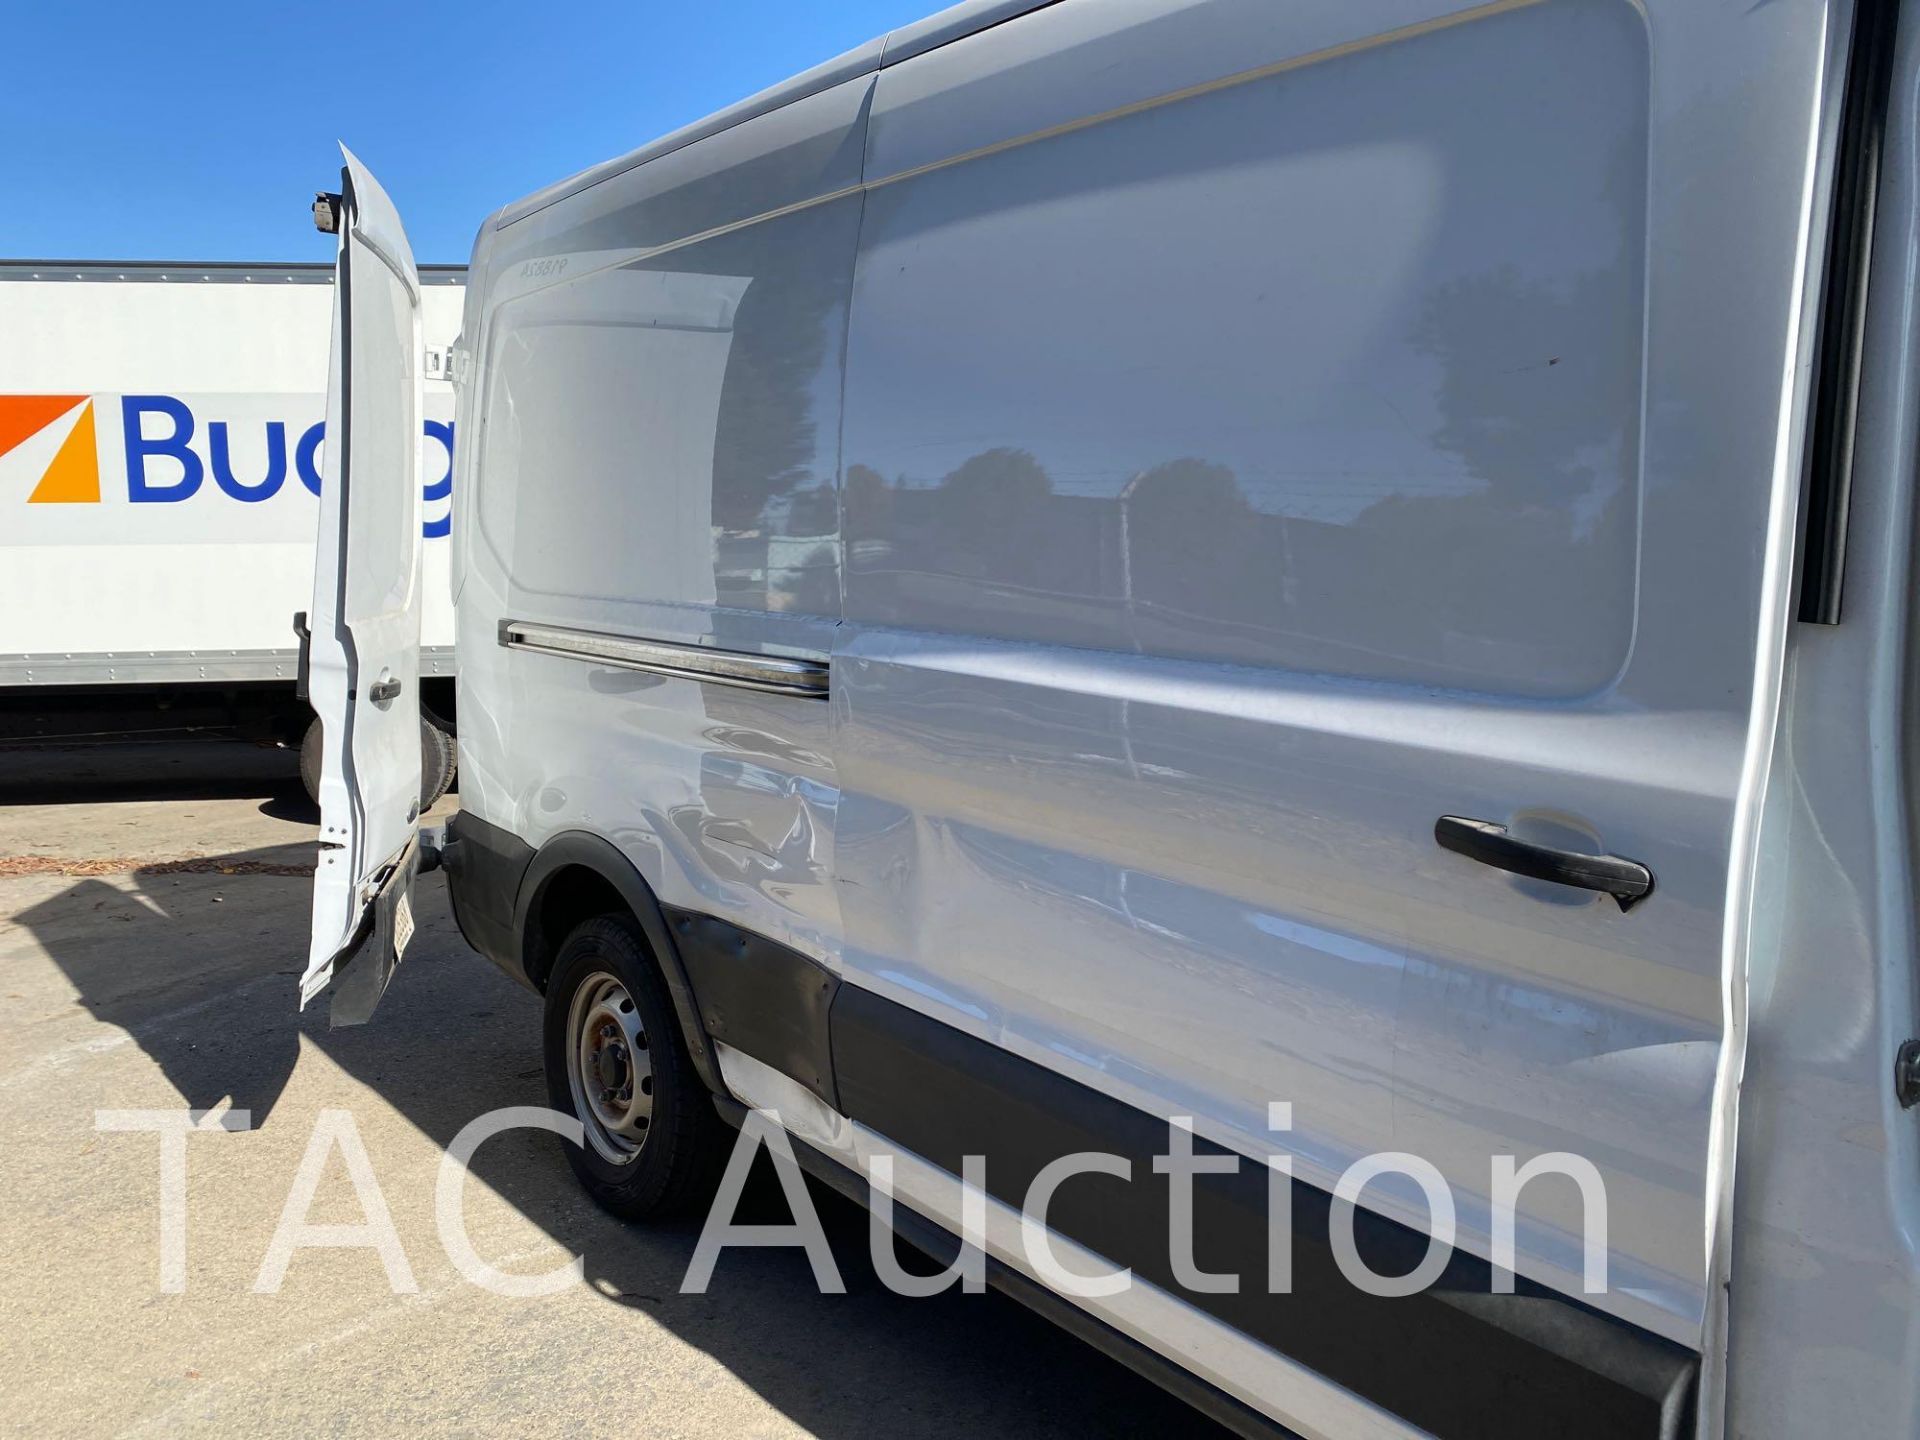 2019 Ford 150 Transit Cargo Van - Image 8 of 43